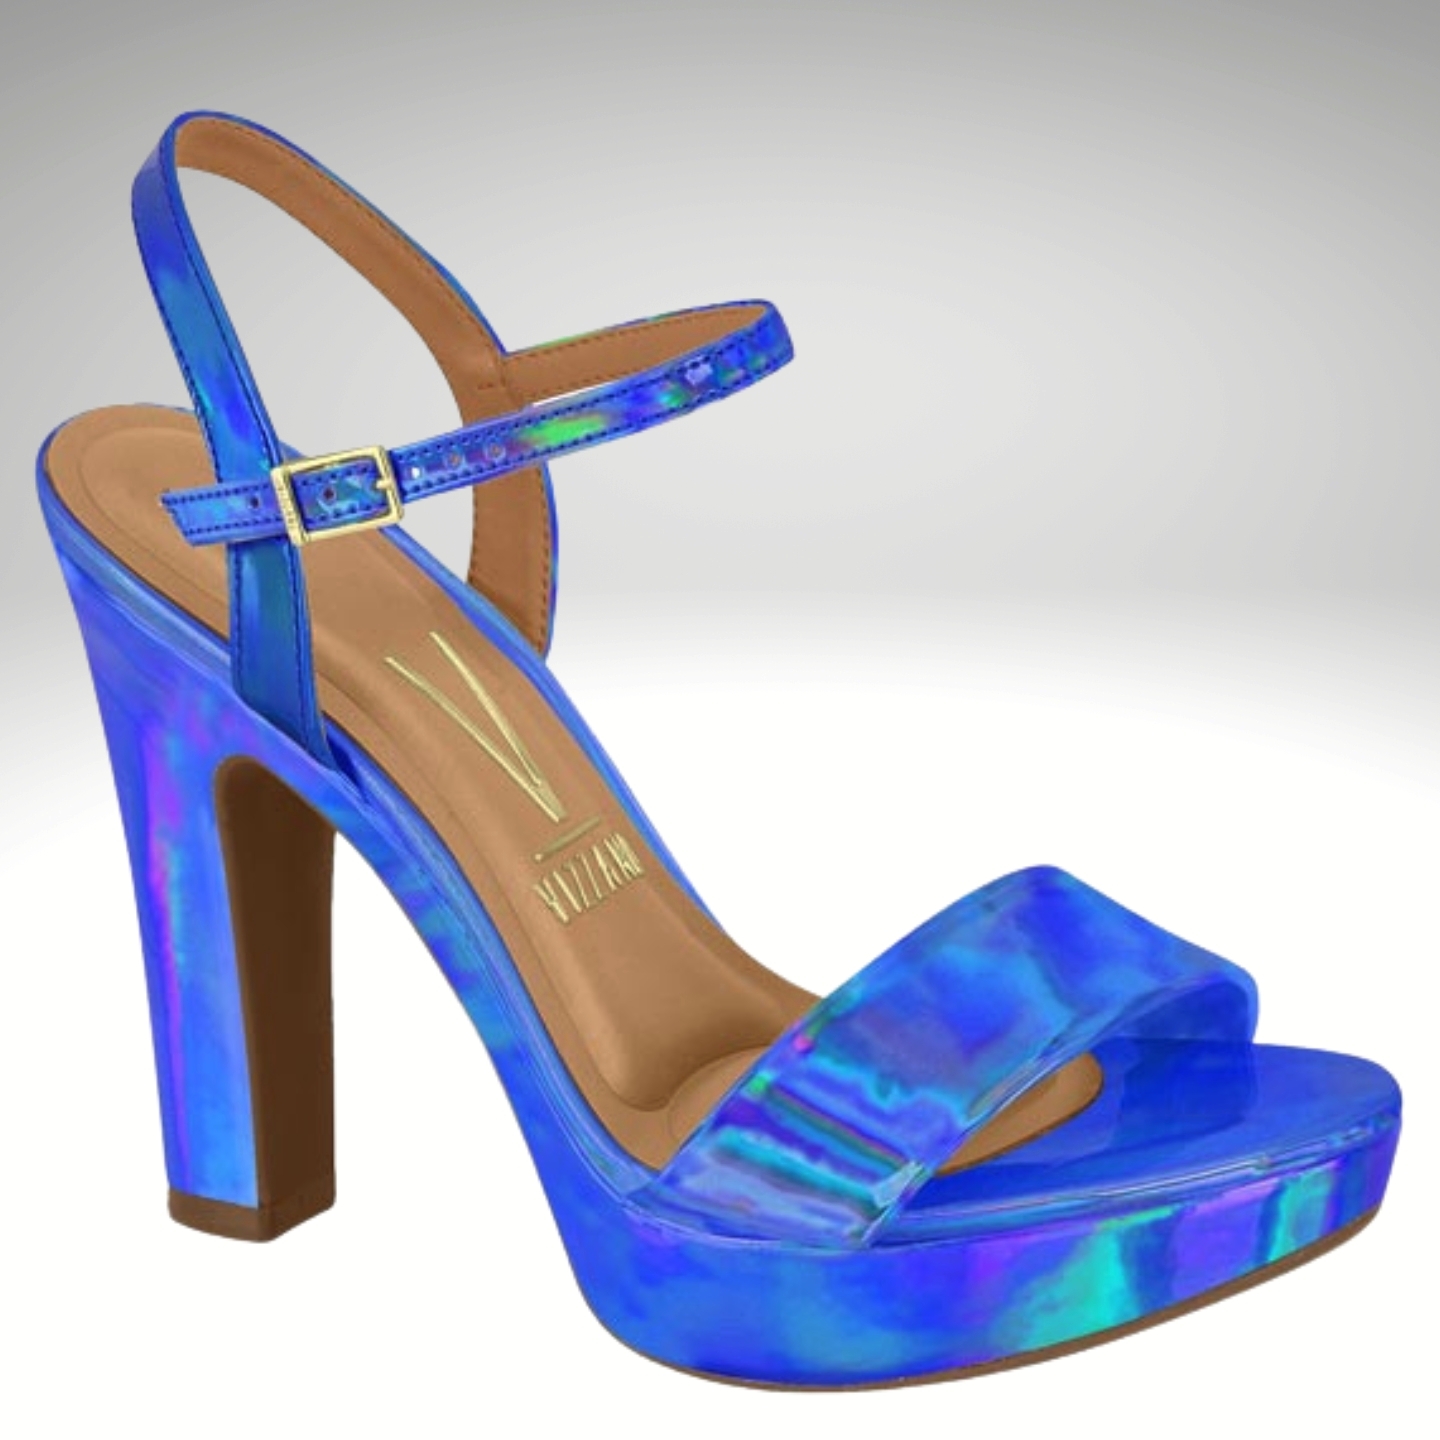 2725-73-001- Metallic kobaltblauwe blokhak sandalen met plateau – Kobalt blauwe blokhak sandalen met plateau